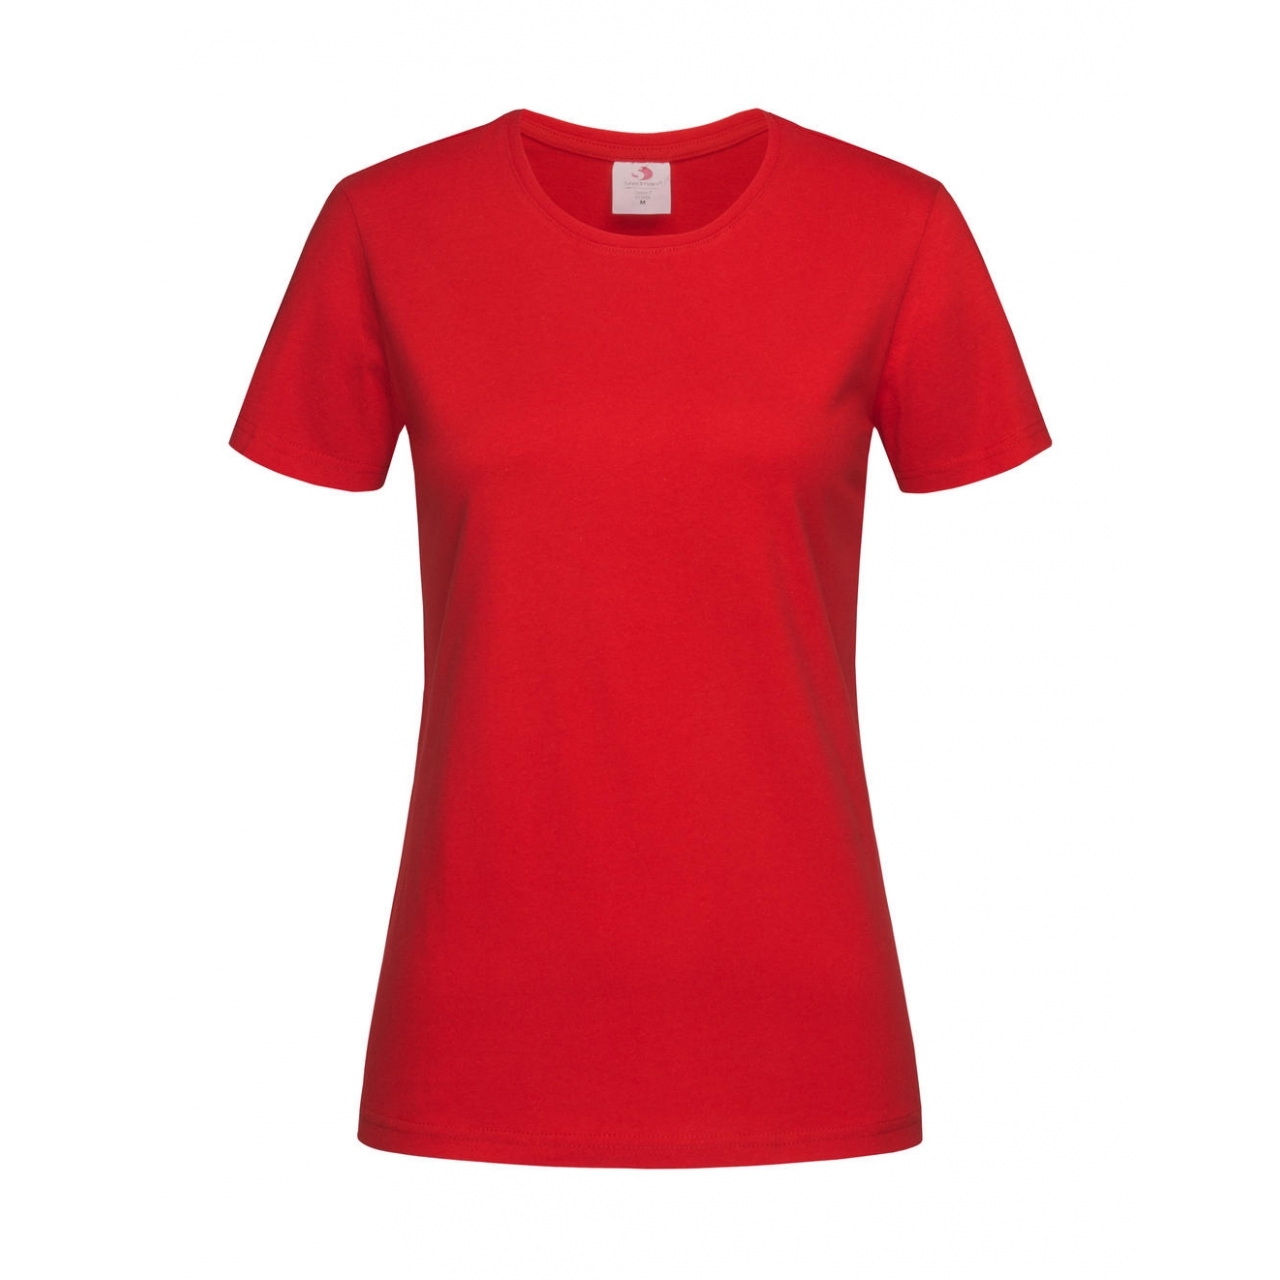 Tričko dámské Stedman Fitted s kulatým výstřihem - červené, L